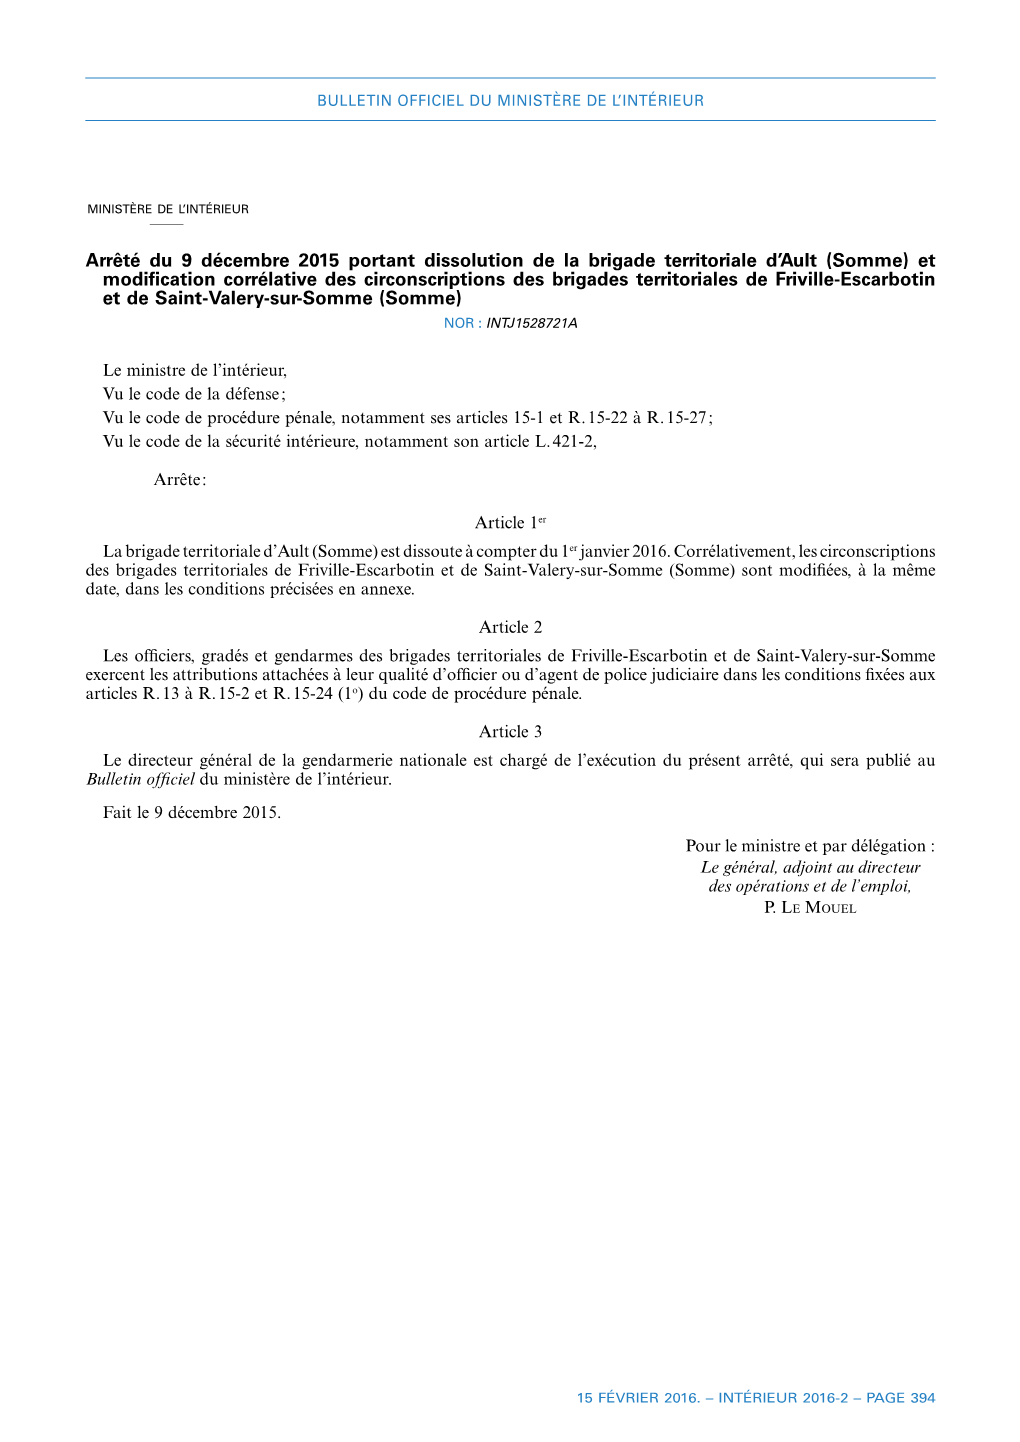 Arrêté Du 9 Décembre 2015 Portant Dissolution De La Brigade Territoriale D'ault (Somme) Et Modification Corrélative